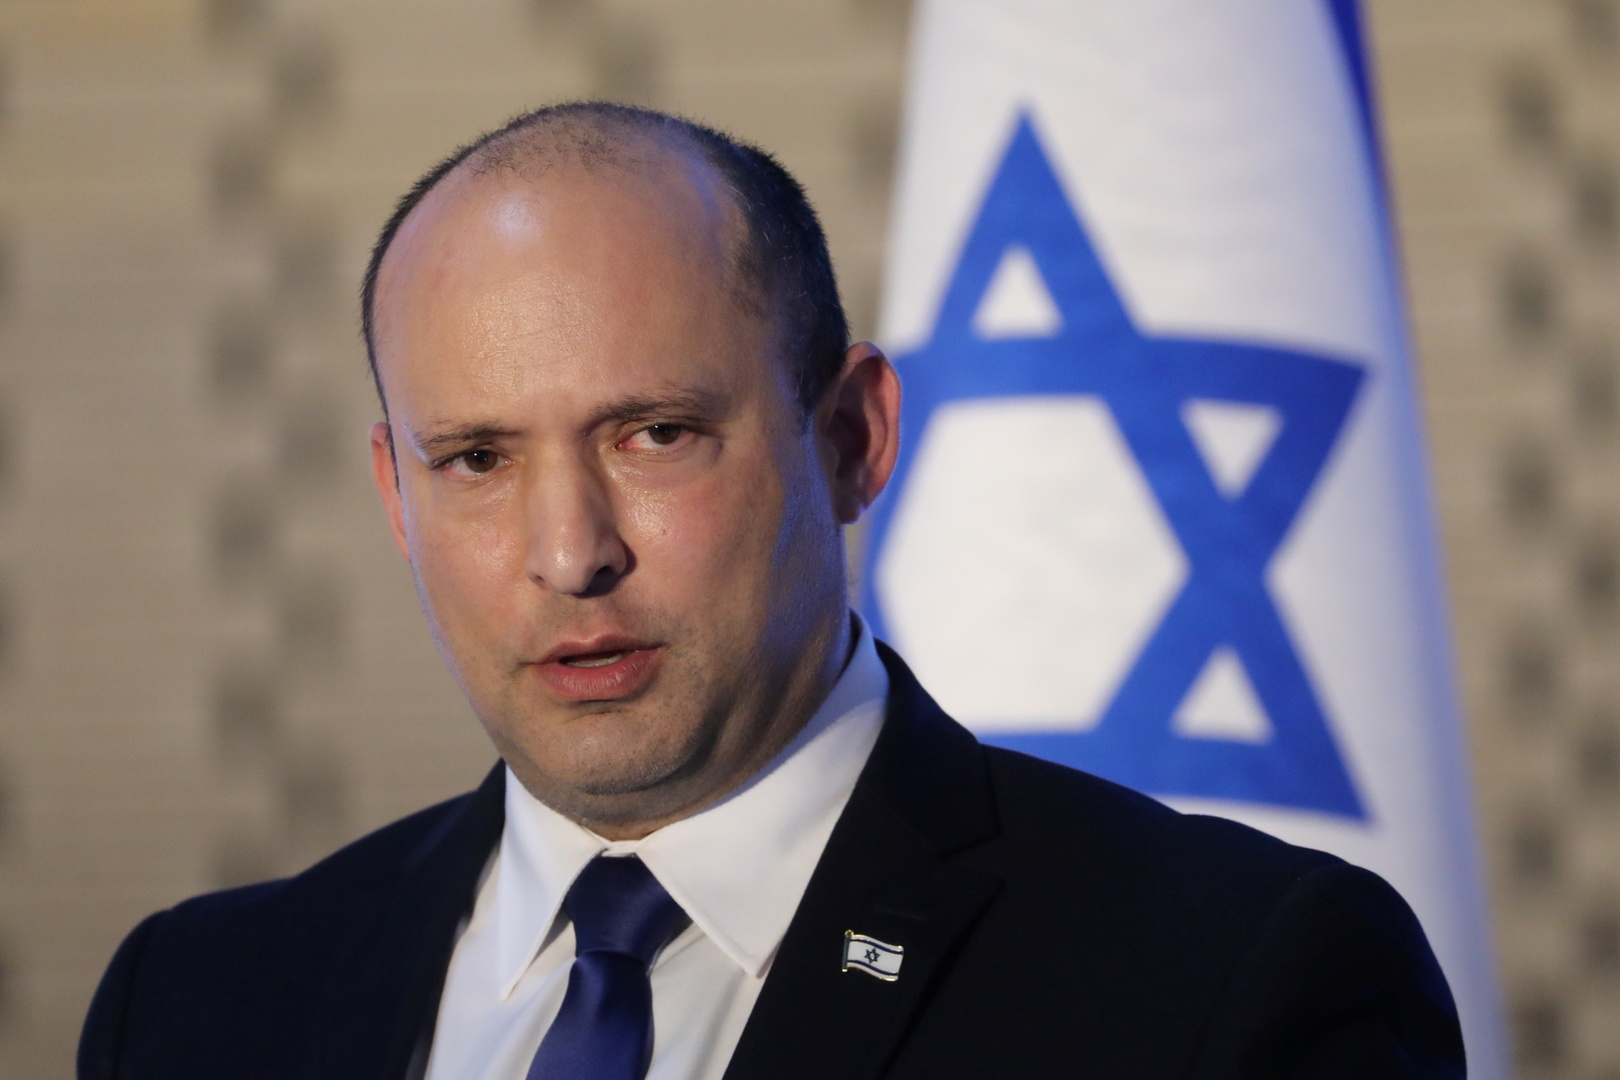 حكومة إسرائيل الجديدة تصدر أولى موافقاتها على بناء استيطاني